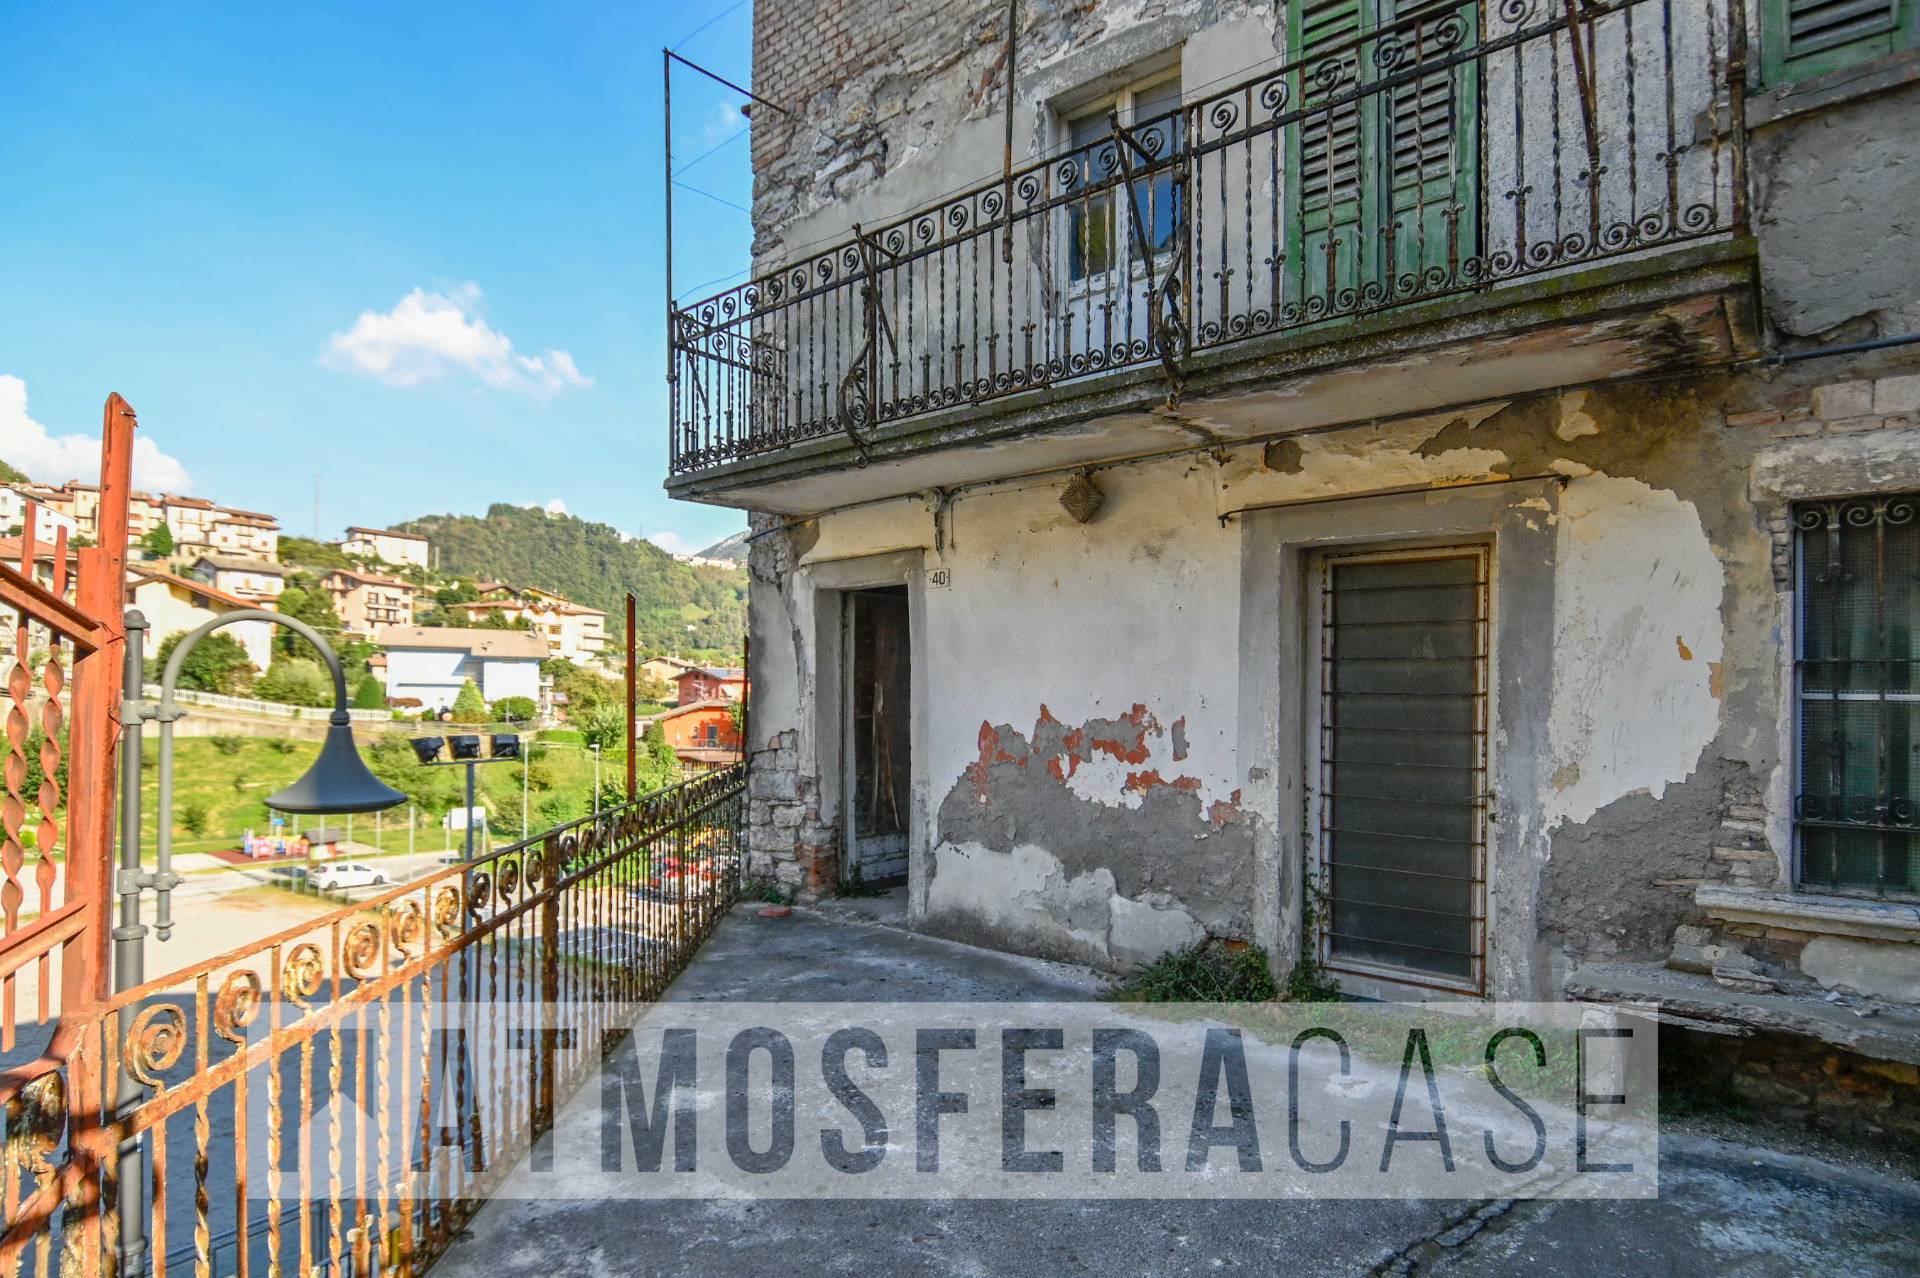 Rustico / Casale in vendita a Ubiale Clanezzo, 6 locali, prezzo € 19.000 | PortaleAgenzieImmobiliari.it